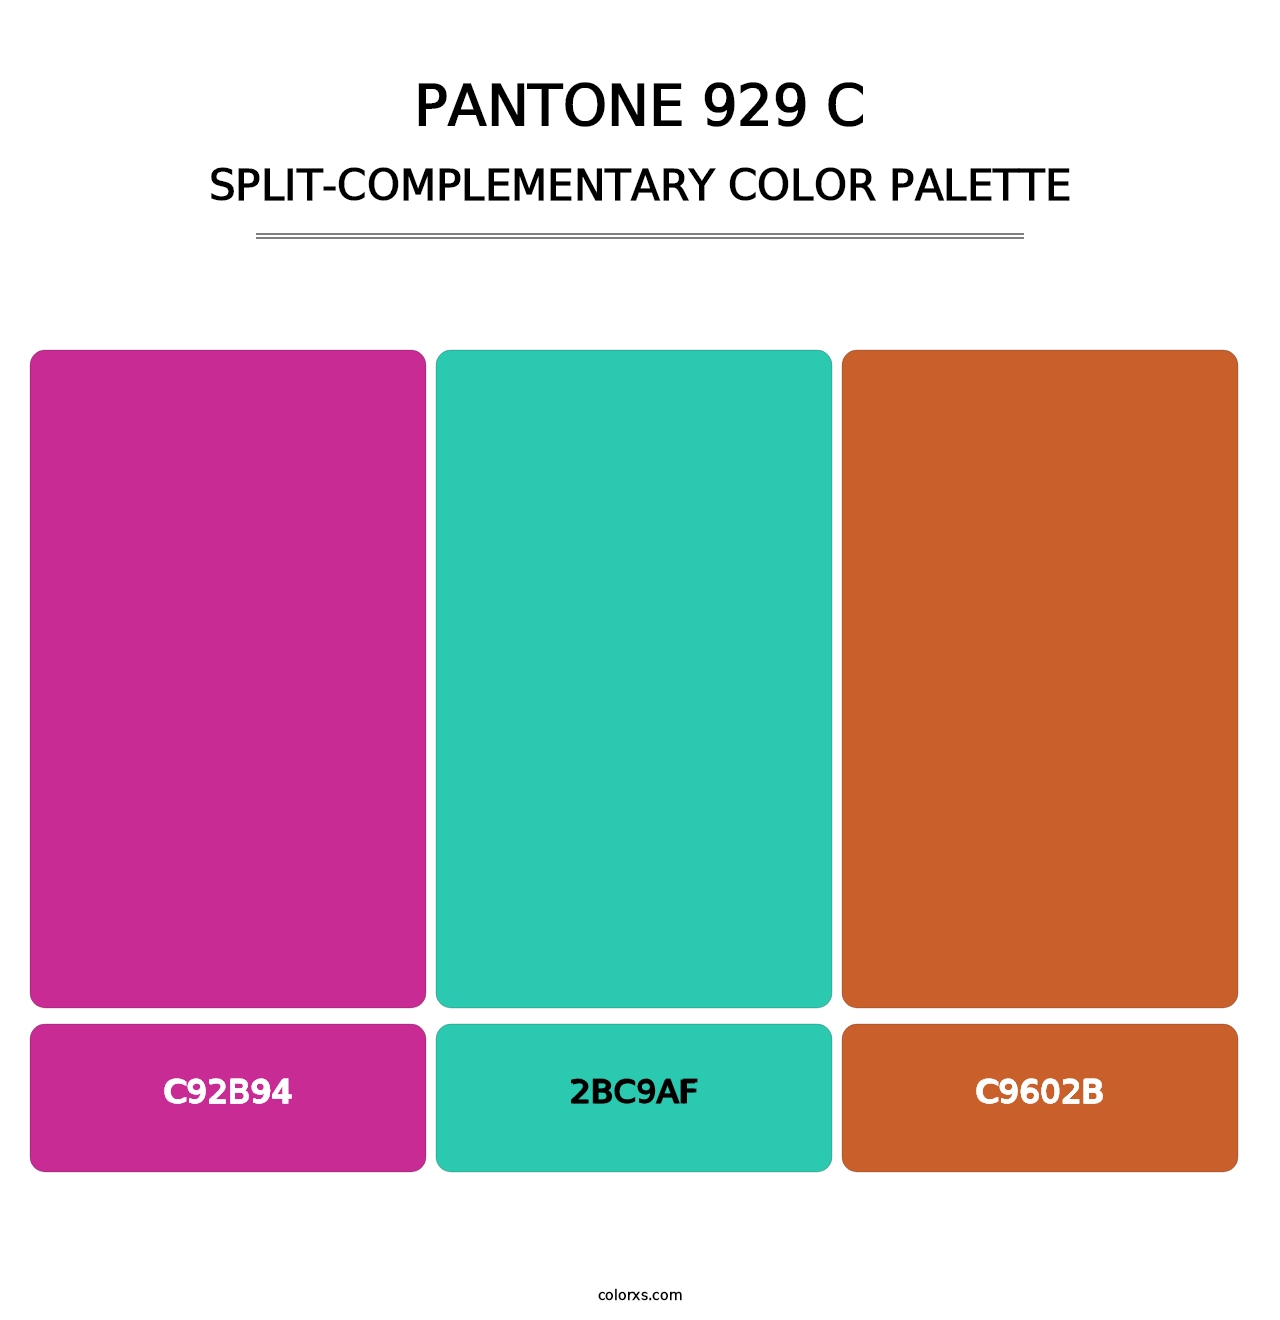 PANTONE 929 C - Split-Complementary Color Palette